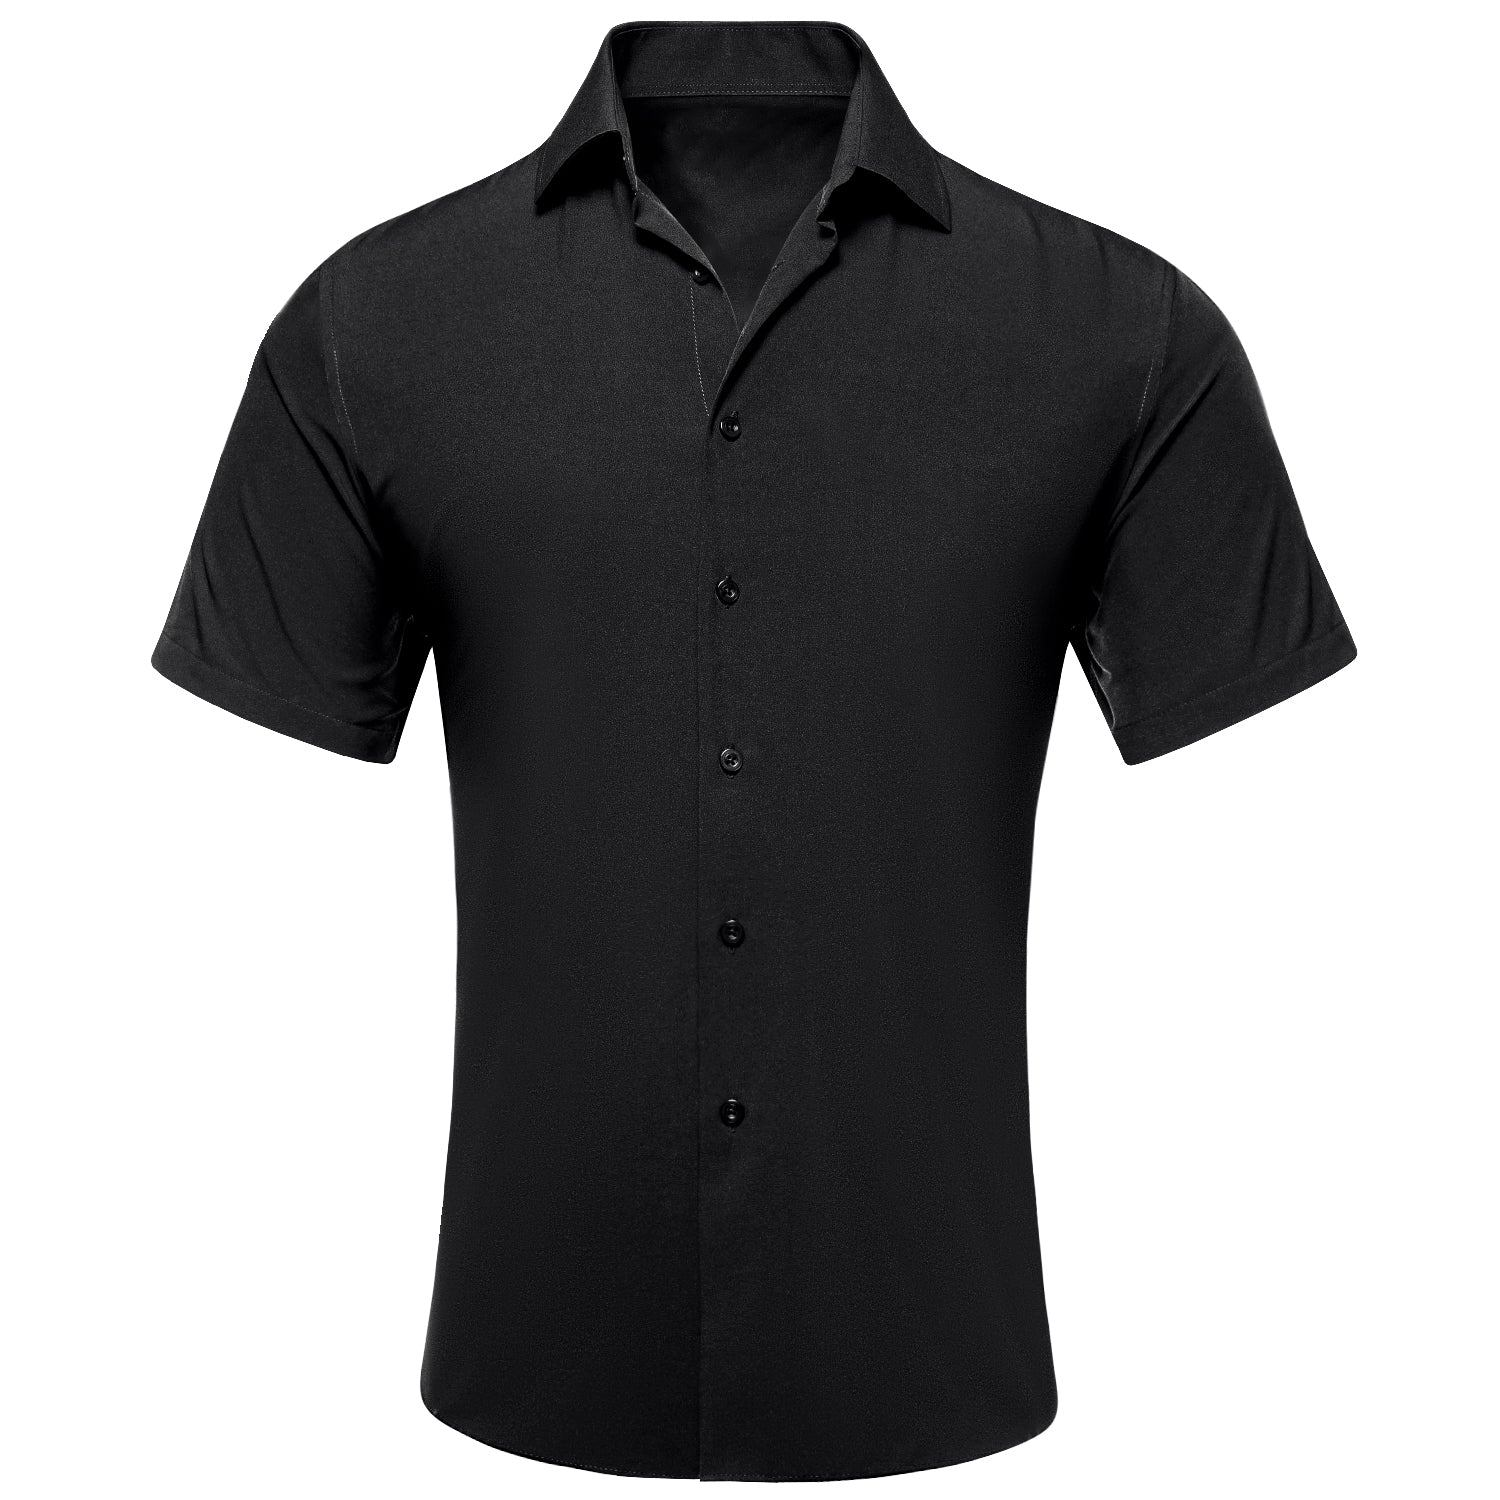 Black Solid Silk Men's Short Sleeve Shirt